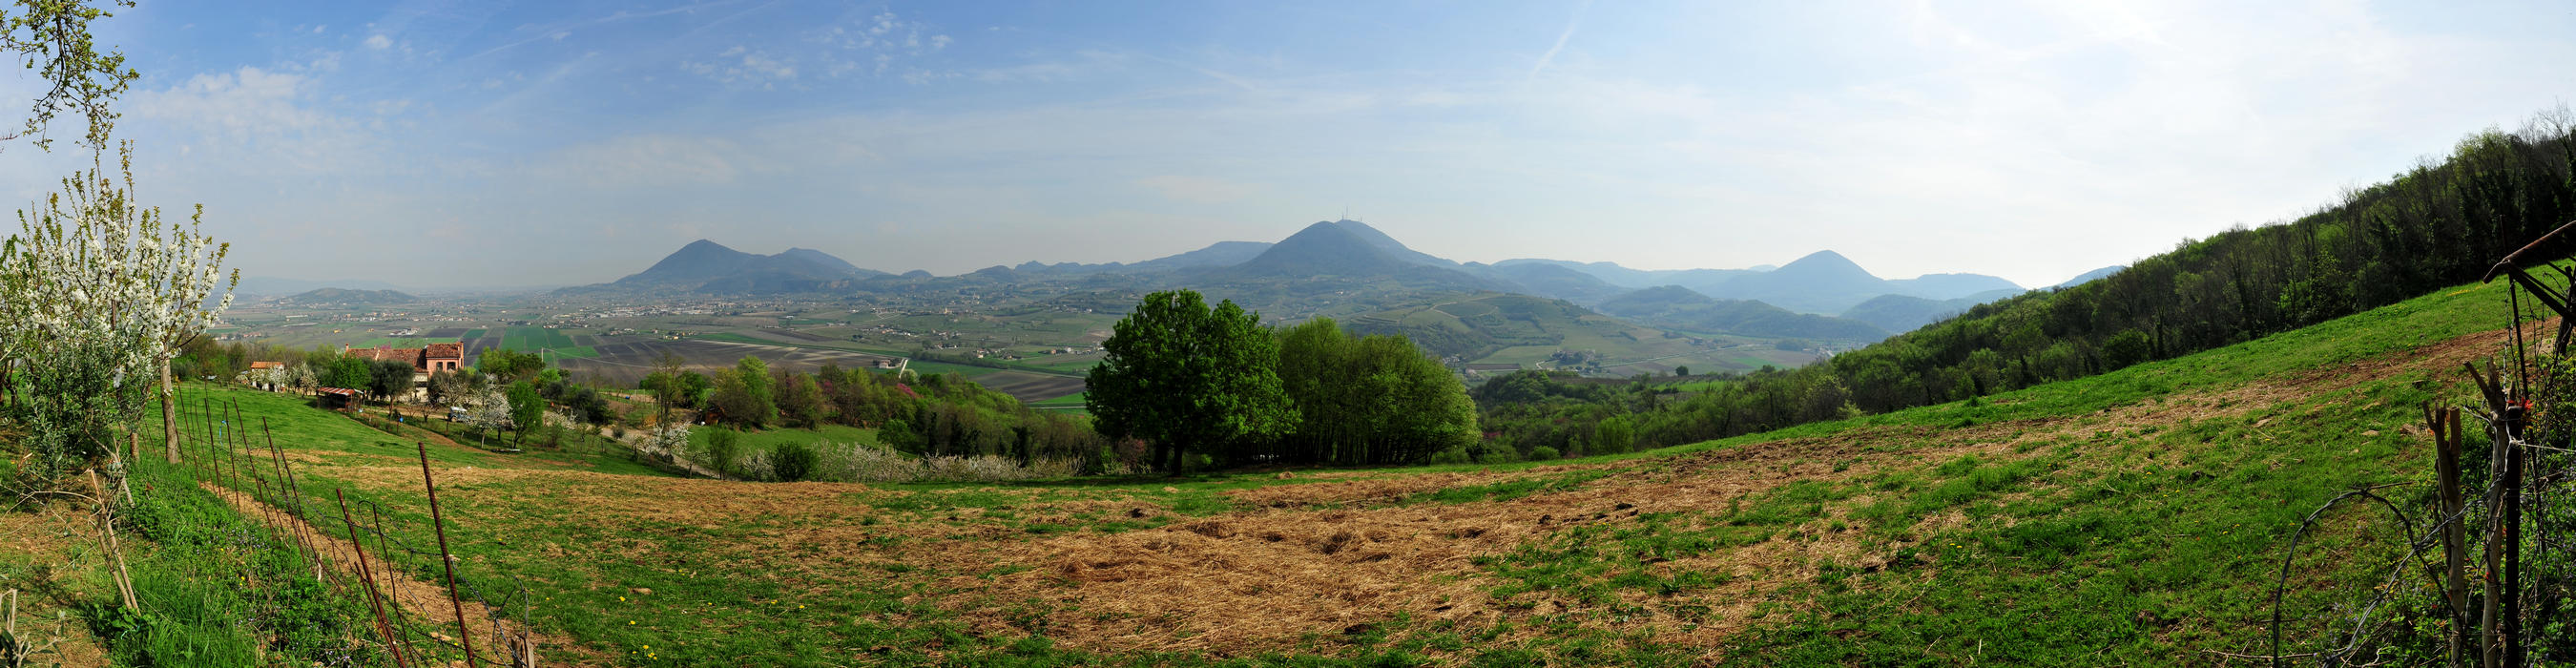 Monte di Lozzo Atestino, Colli Euganei, Padova